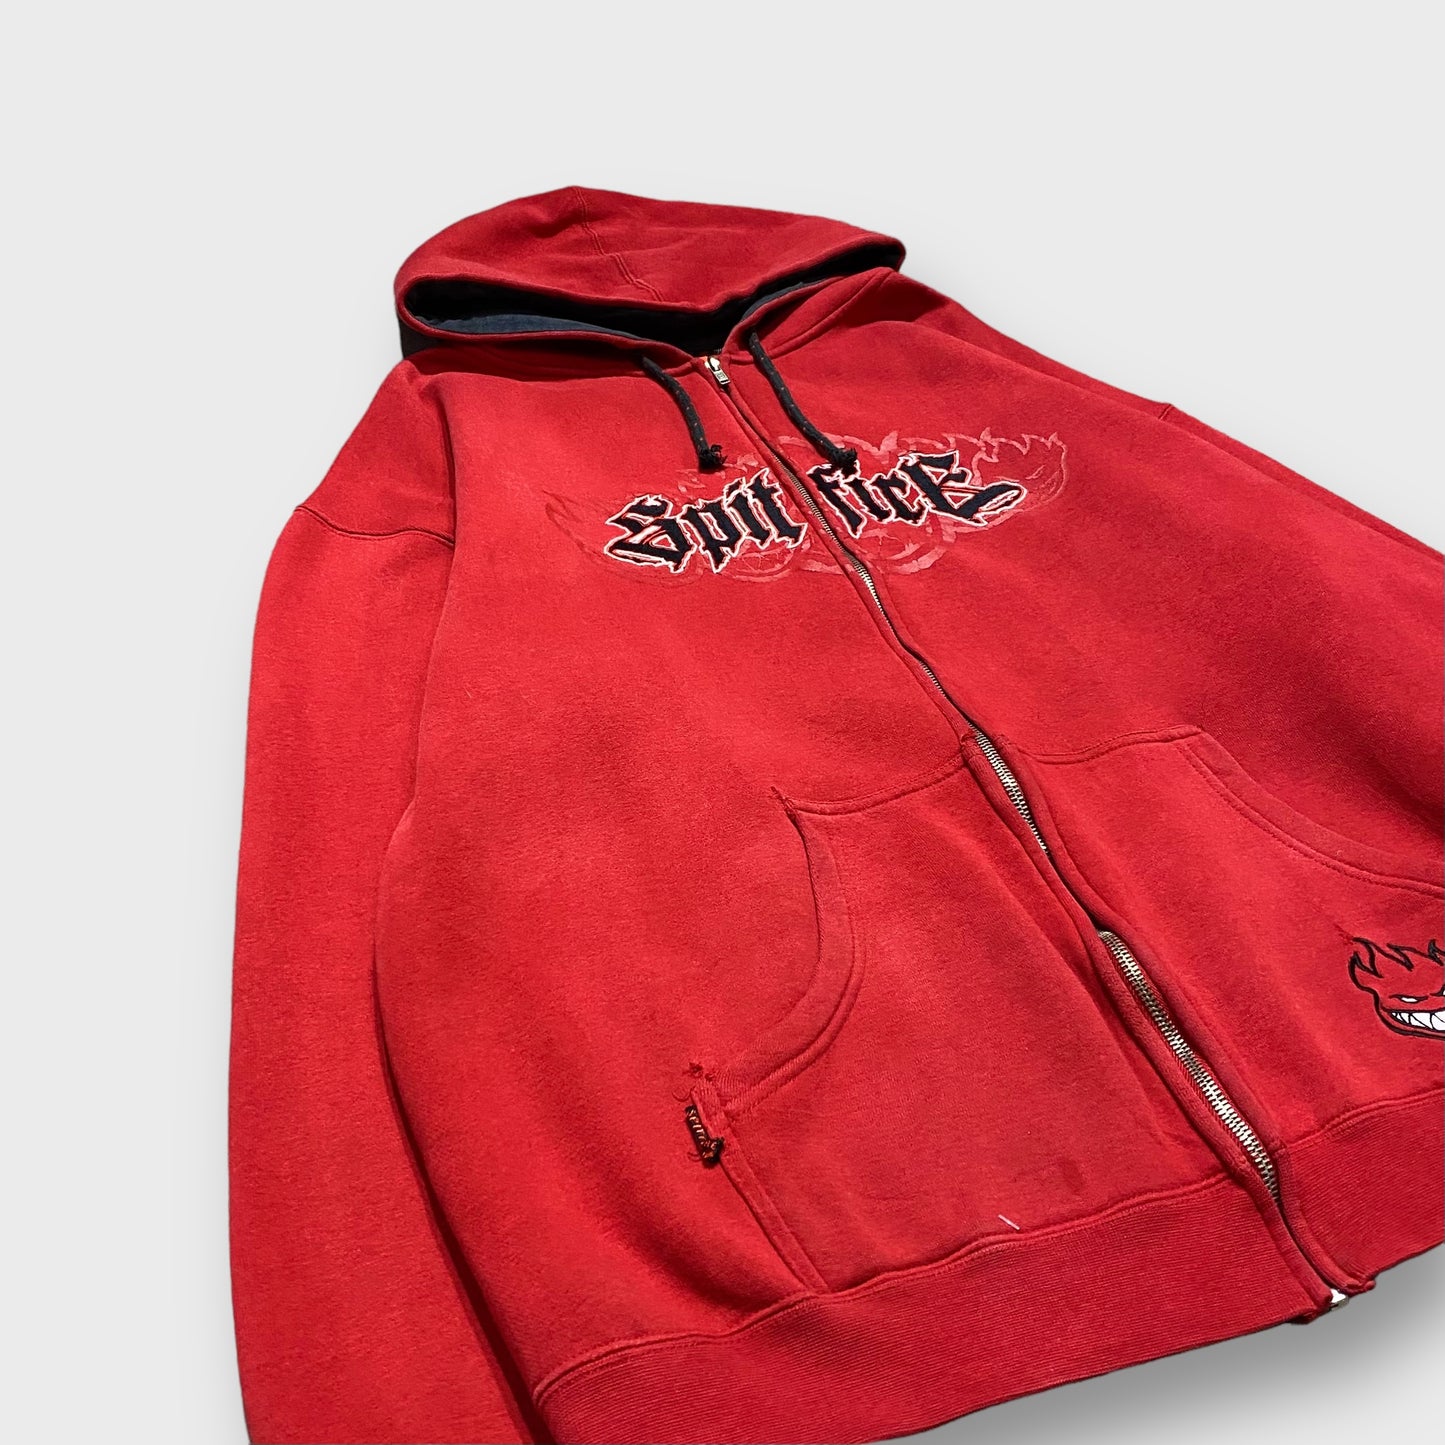 "SPITFIRE" Logo design full zip hoodie